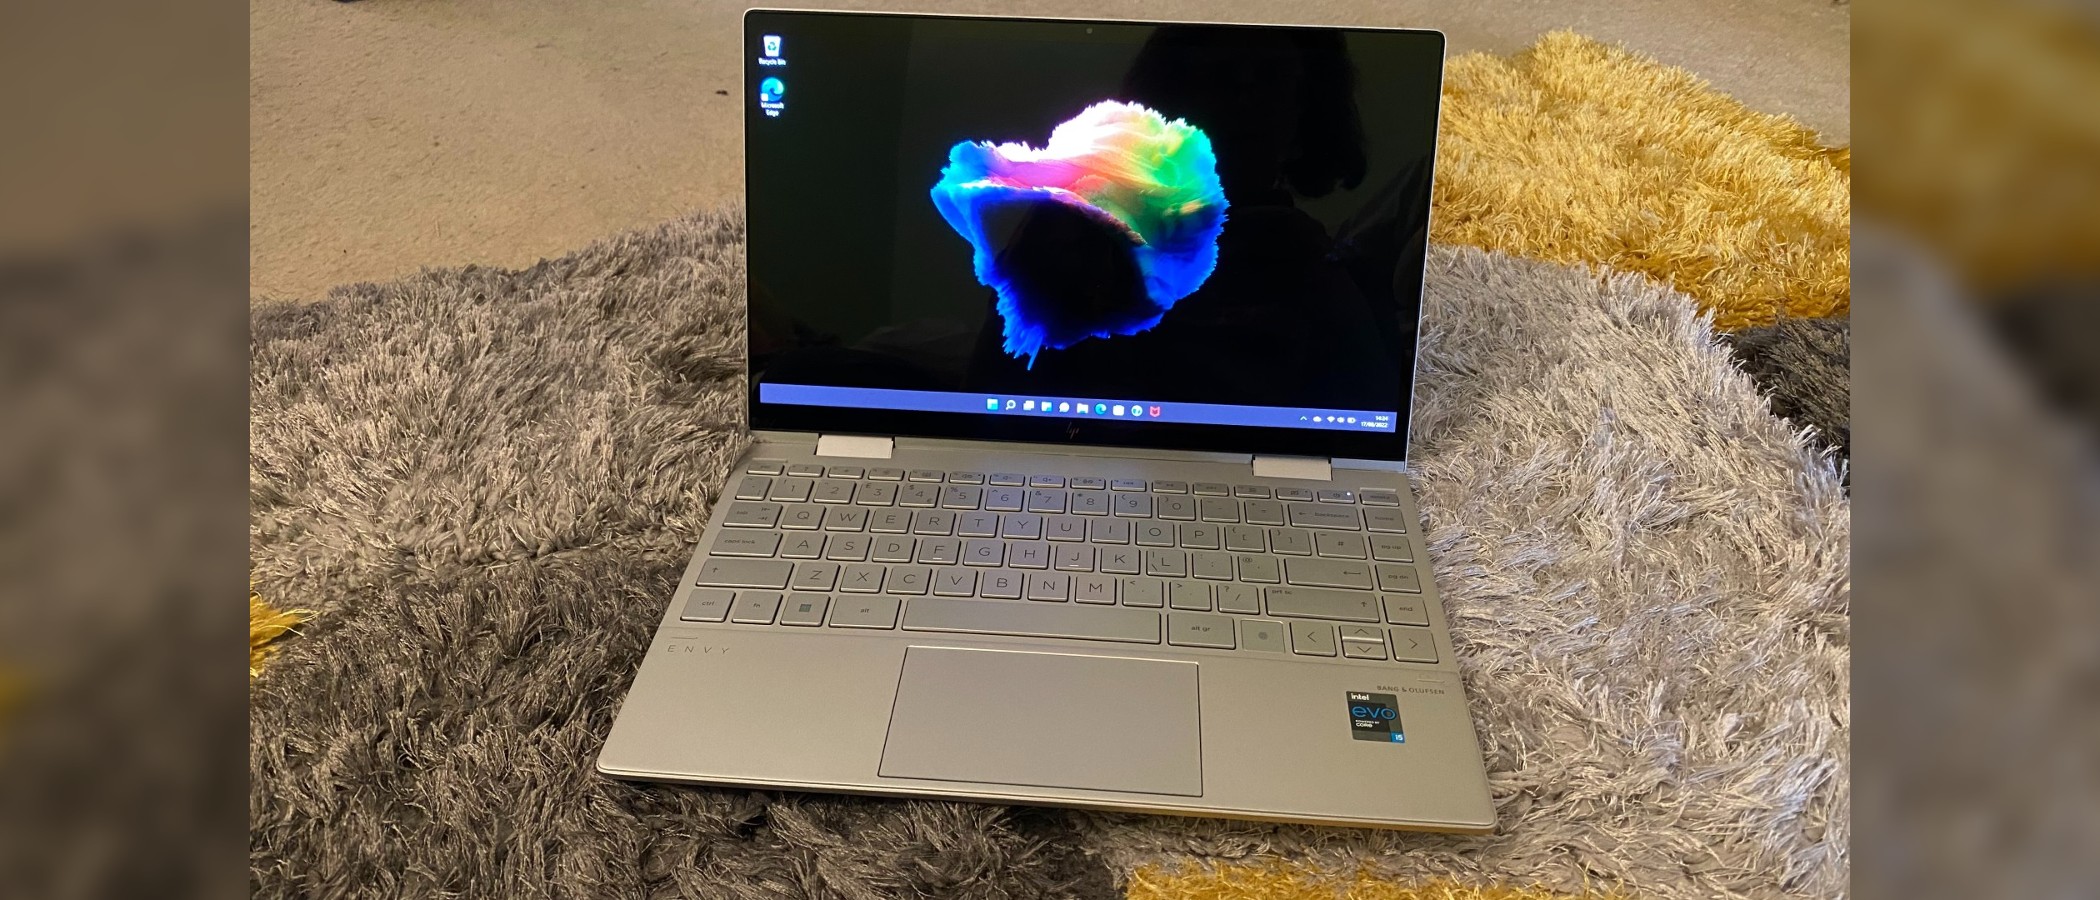 HP Envy x360 13 (2019) review